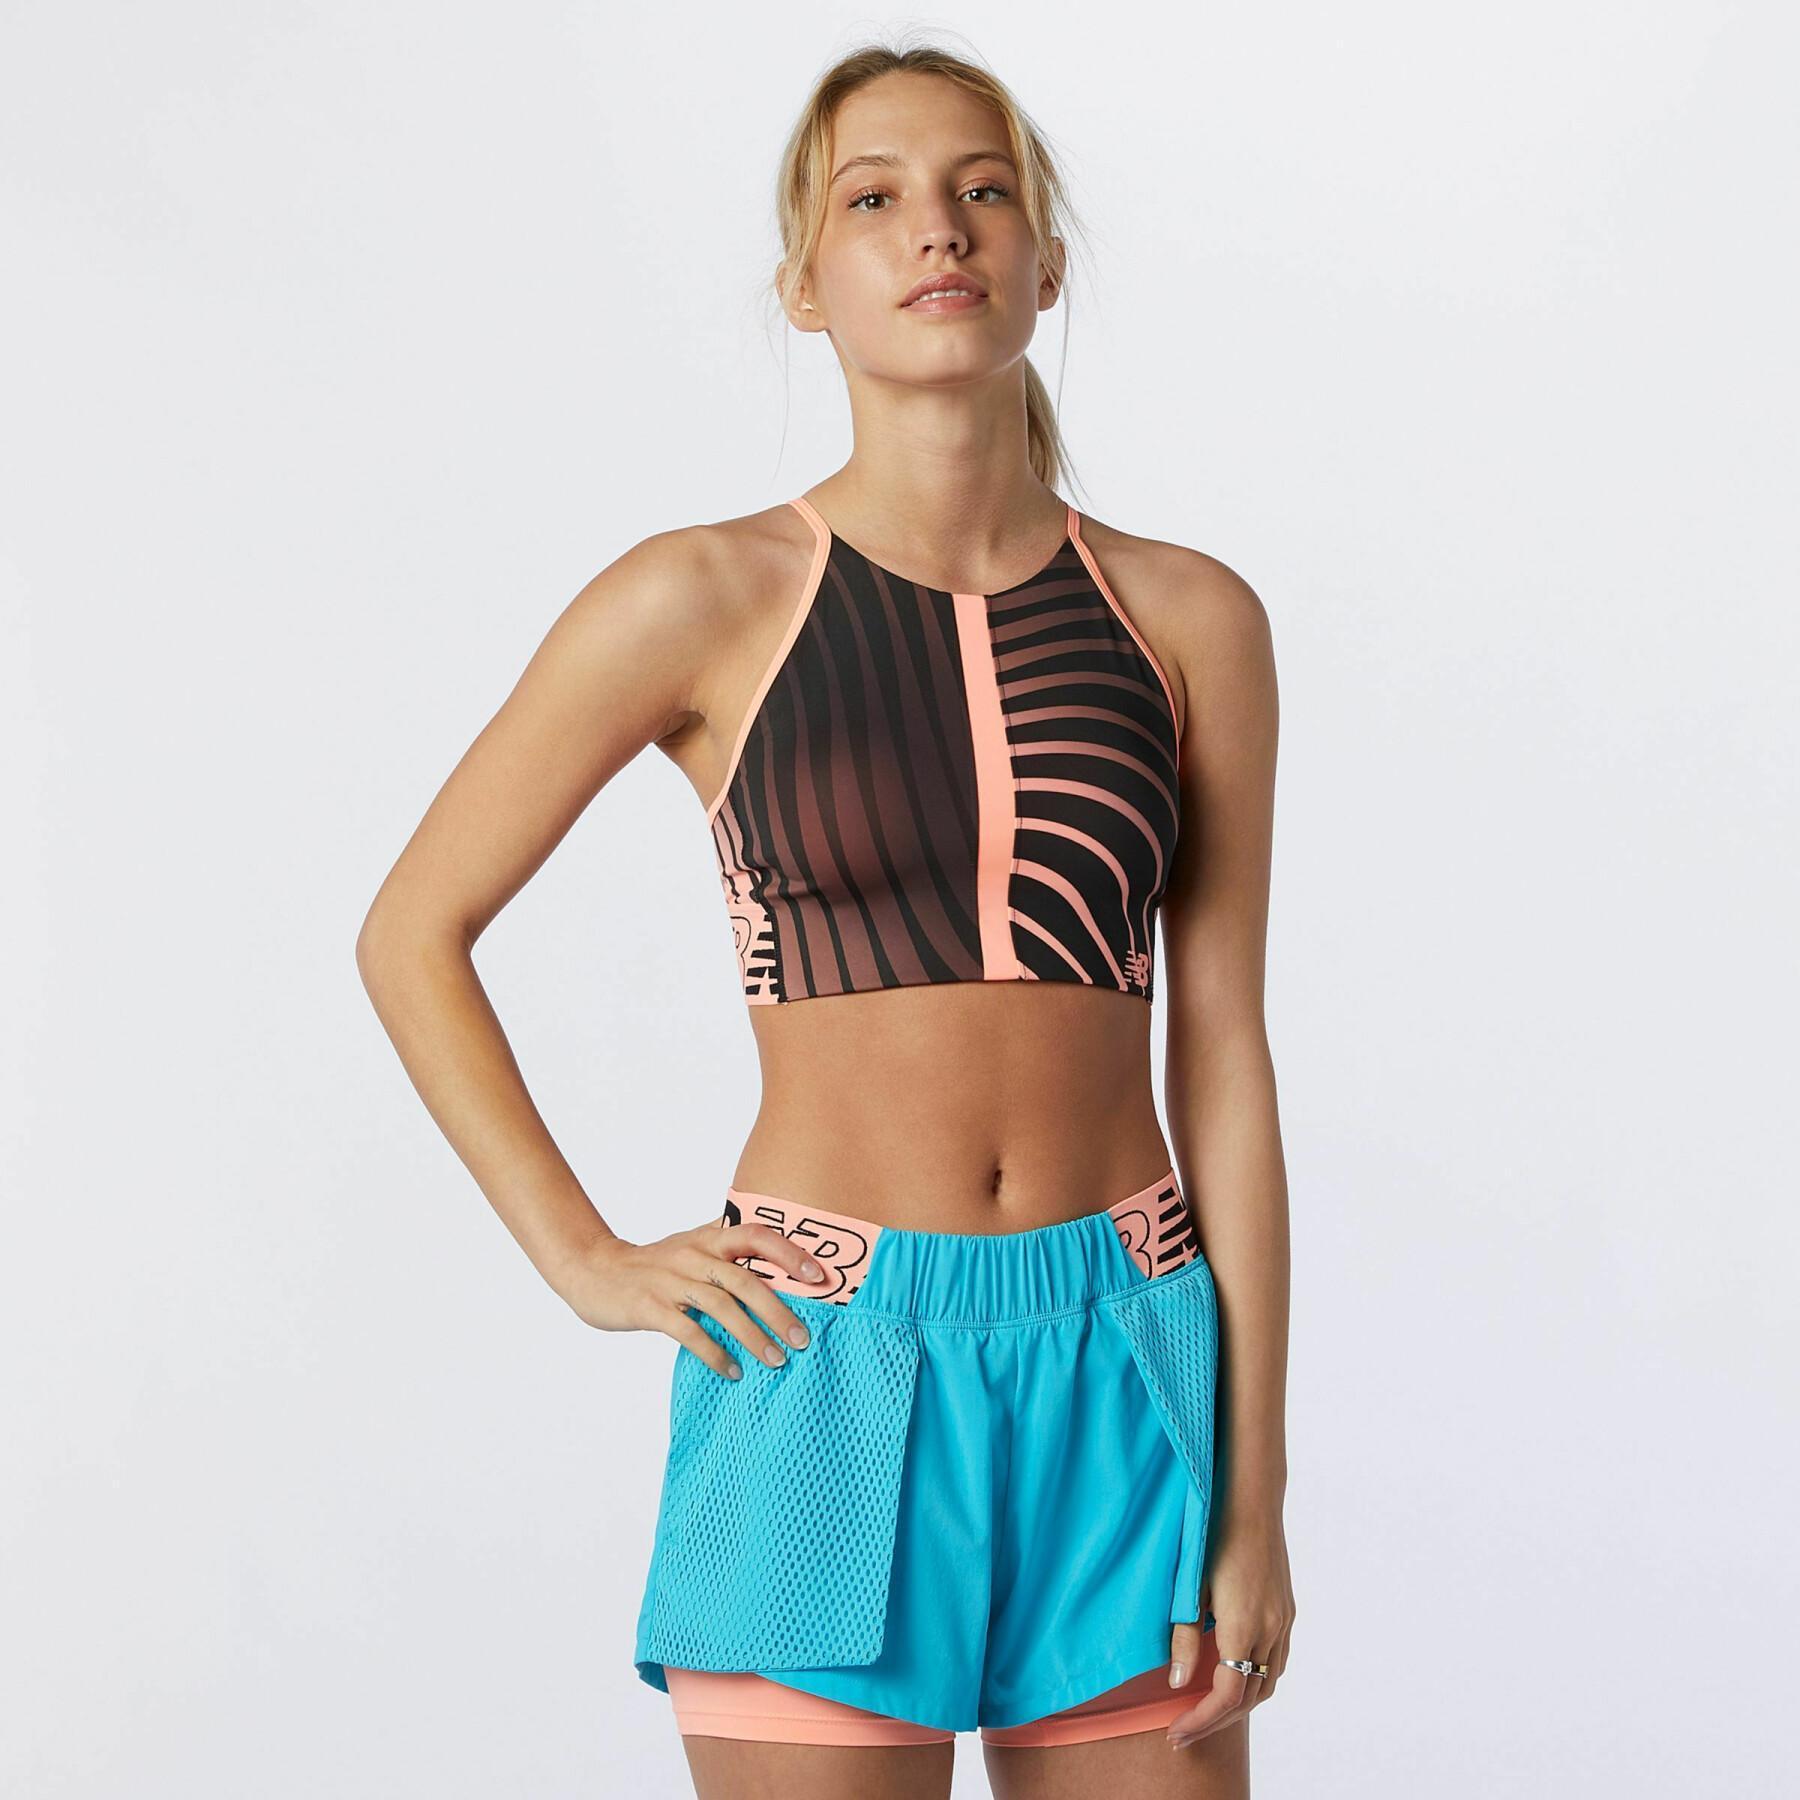 Women's crop top swimsuit New Balance relentless printed